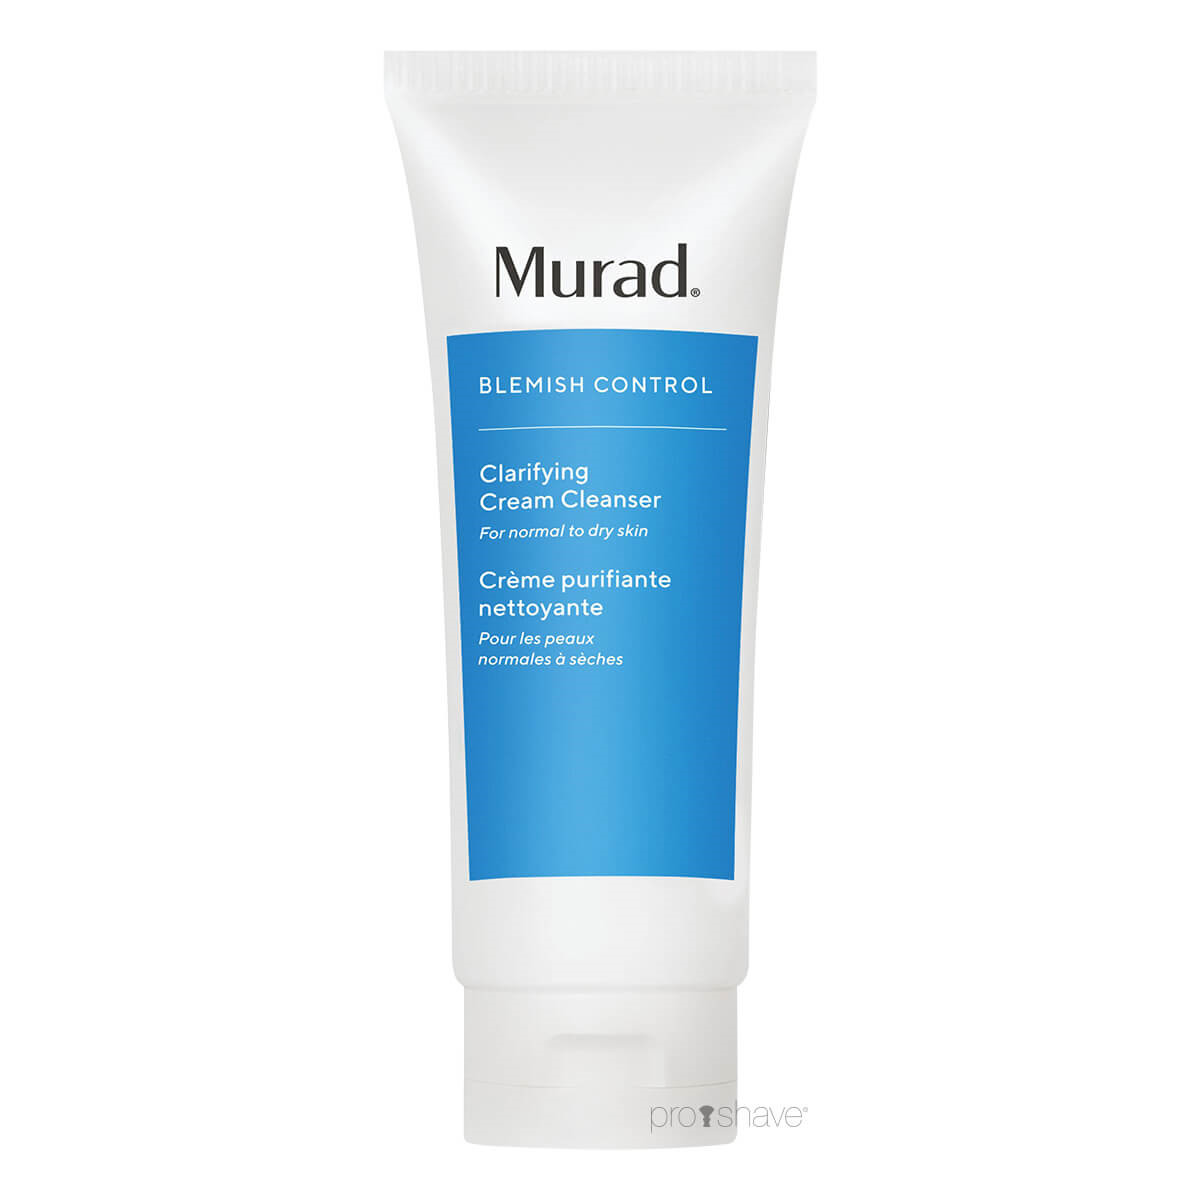 6: Murad Clarifying Cream Cleanser, Blemish Control, 200 ml.